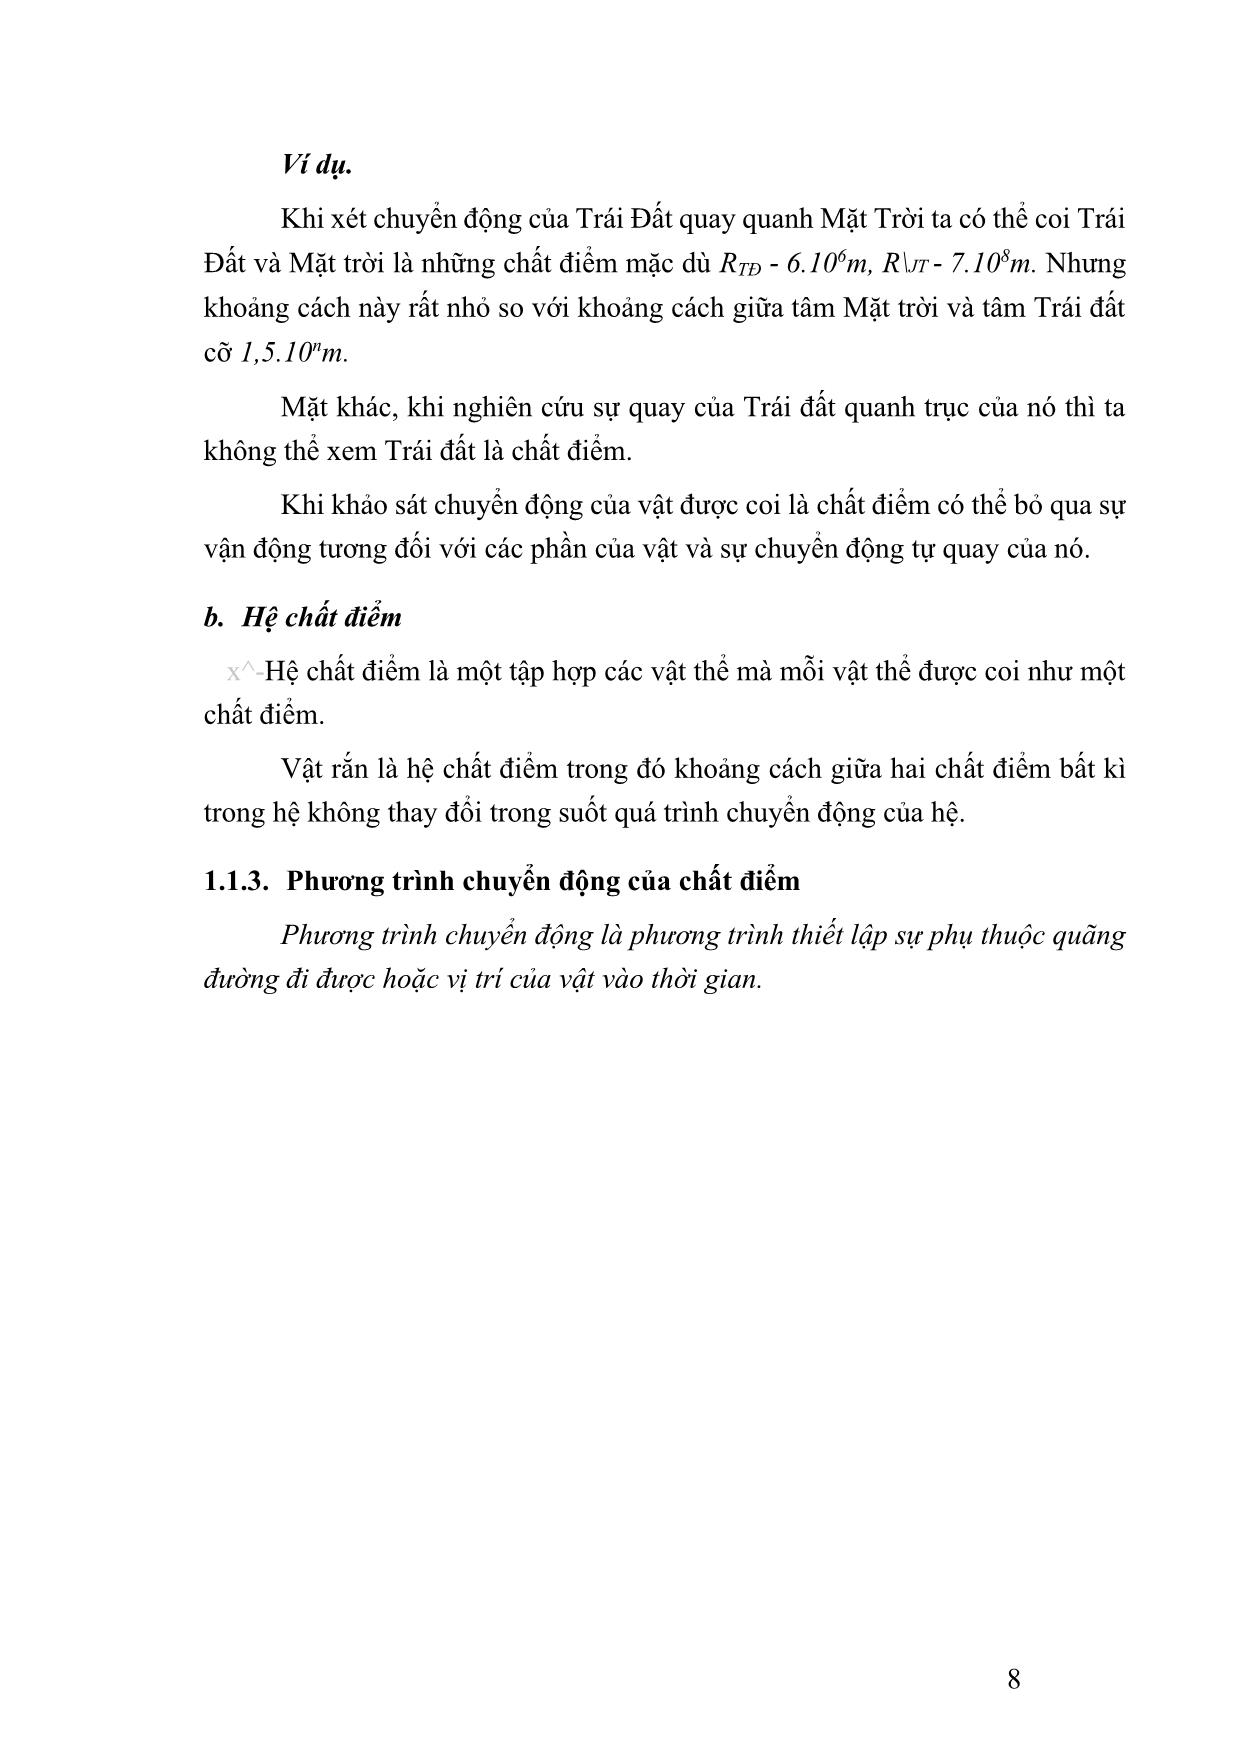 Giáo trình Vật lý đại cương 1 (Phần 1) trang 8